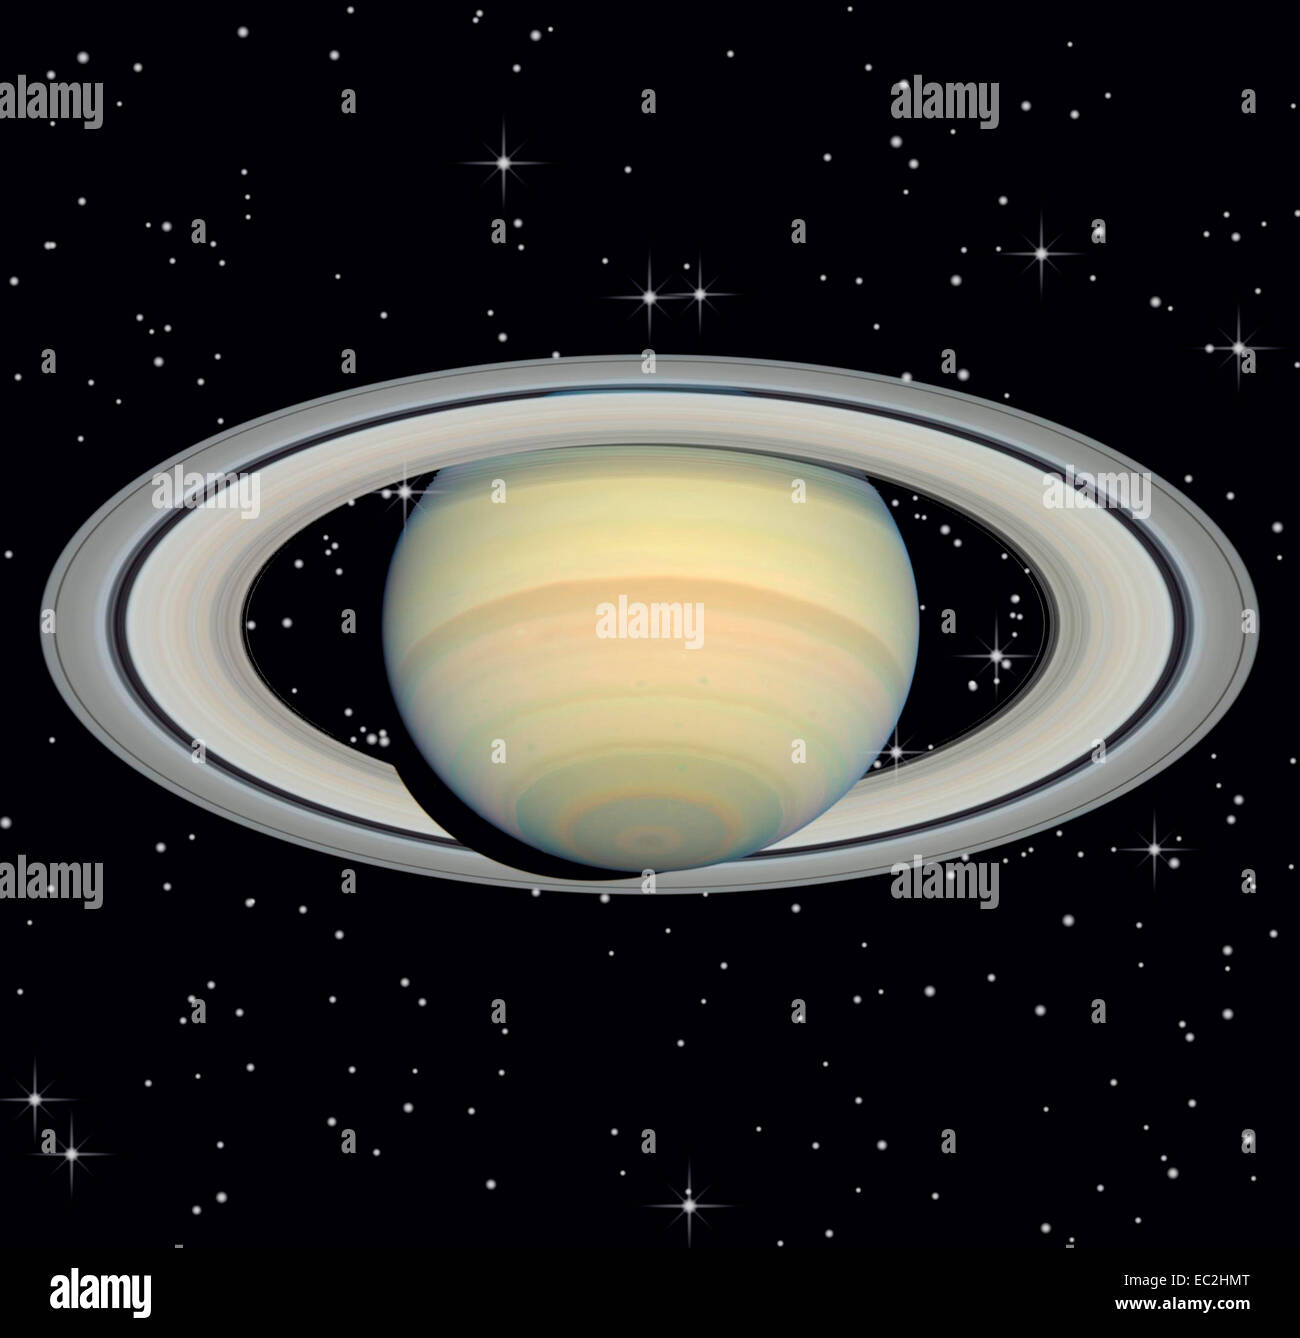 Saturne dans un ciel étoilé de nuit Banque D'Images